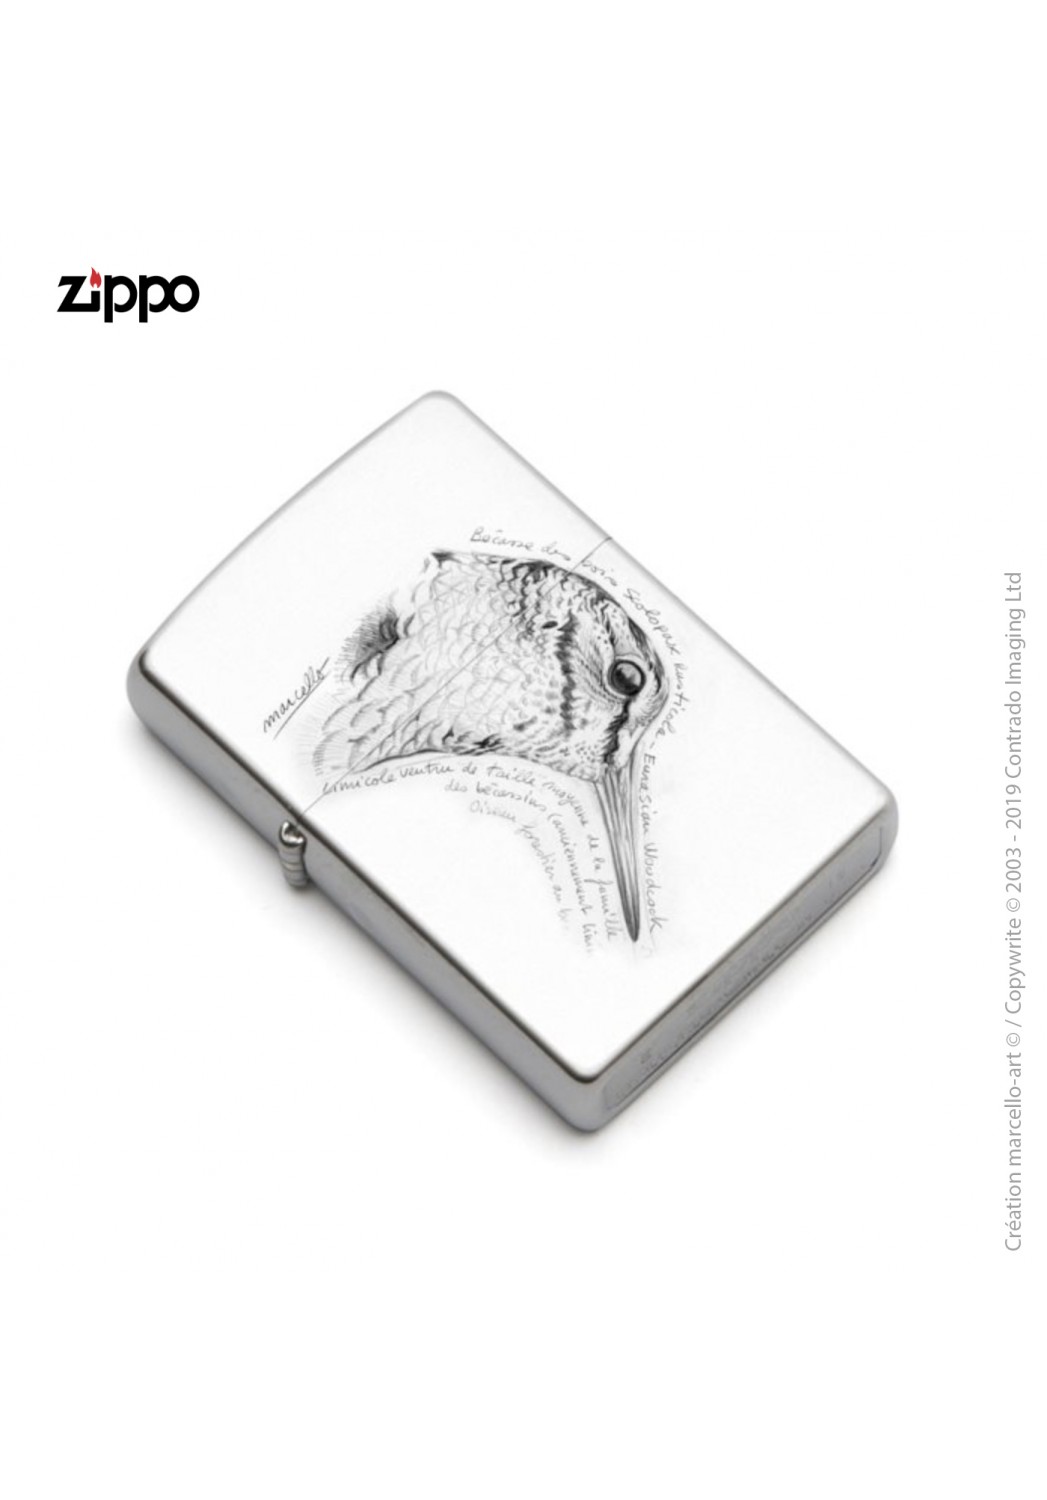 Marcello-art: Decoration accessoiries Zippo 50 snipe head